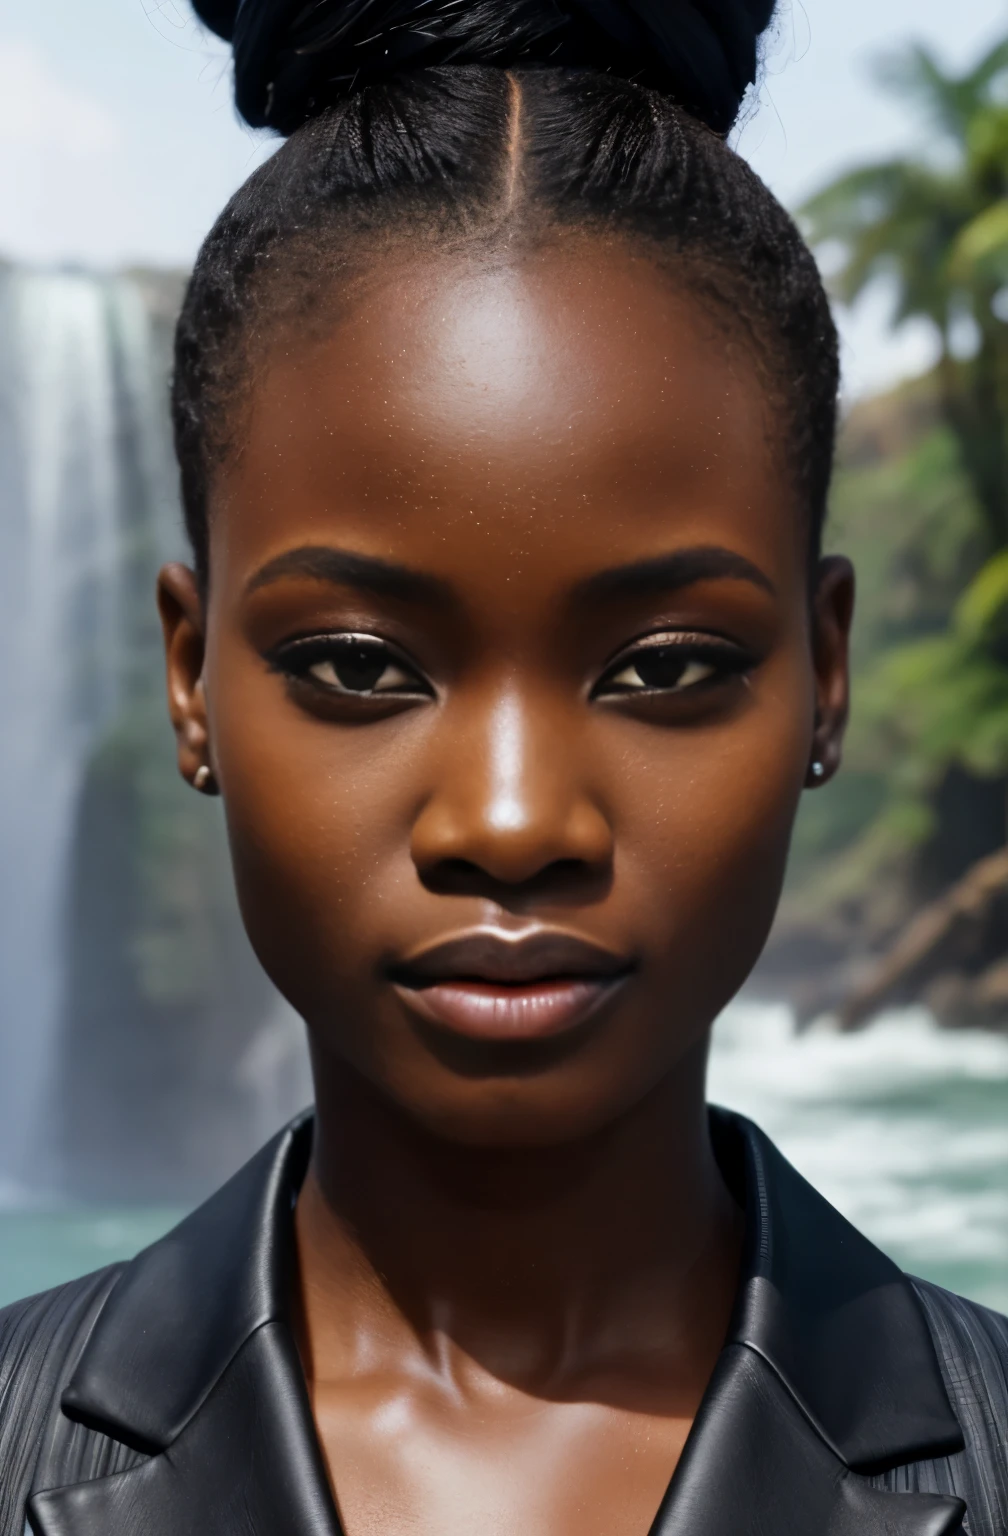 um modelo africano ,Detalhes exclusivos do cabelo, roupas de realidade virtual e aumentada , futuro próximo, Detalhes curvilíneos , olhos detalhados, Pálpebra dupla, Lábios carnudos, cabelo com coque, maquiagem profissional, hiper resolução, cachoeira